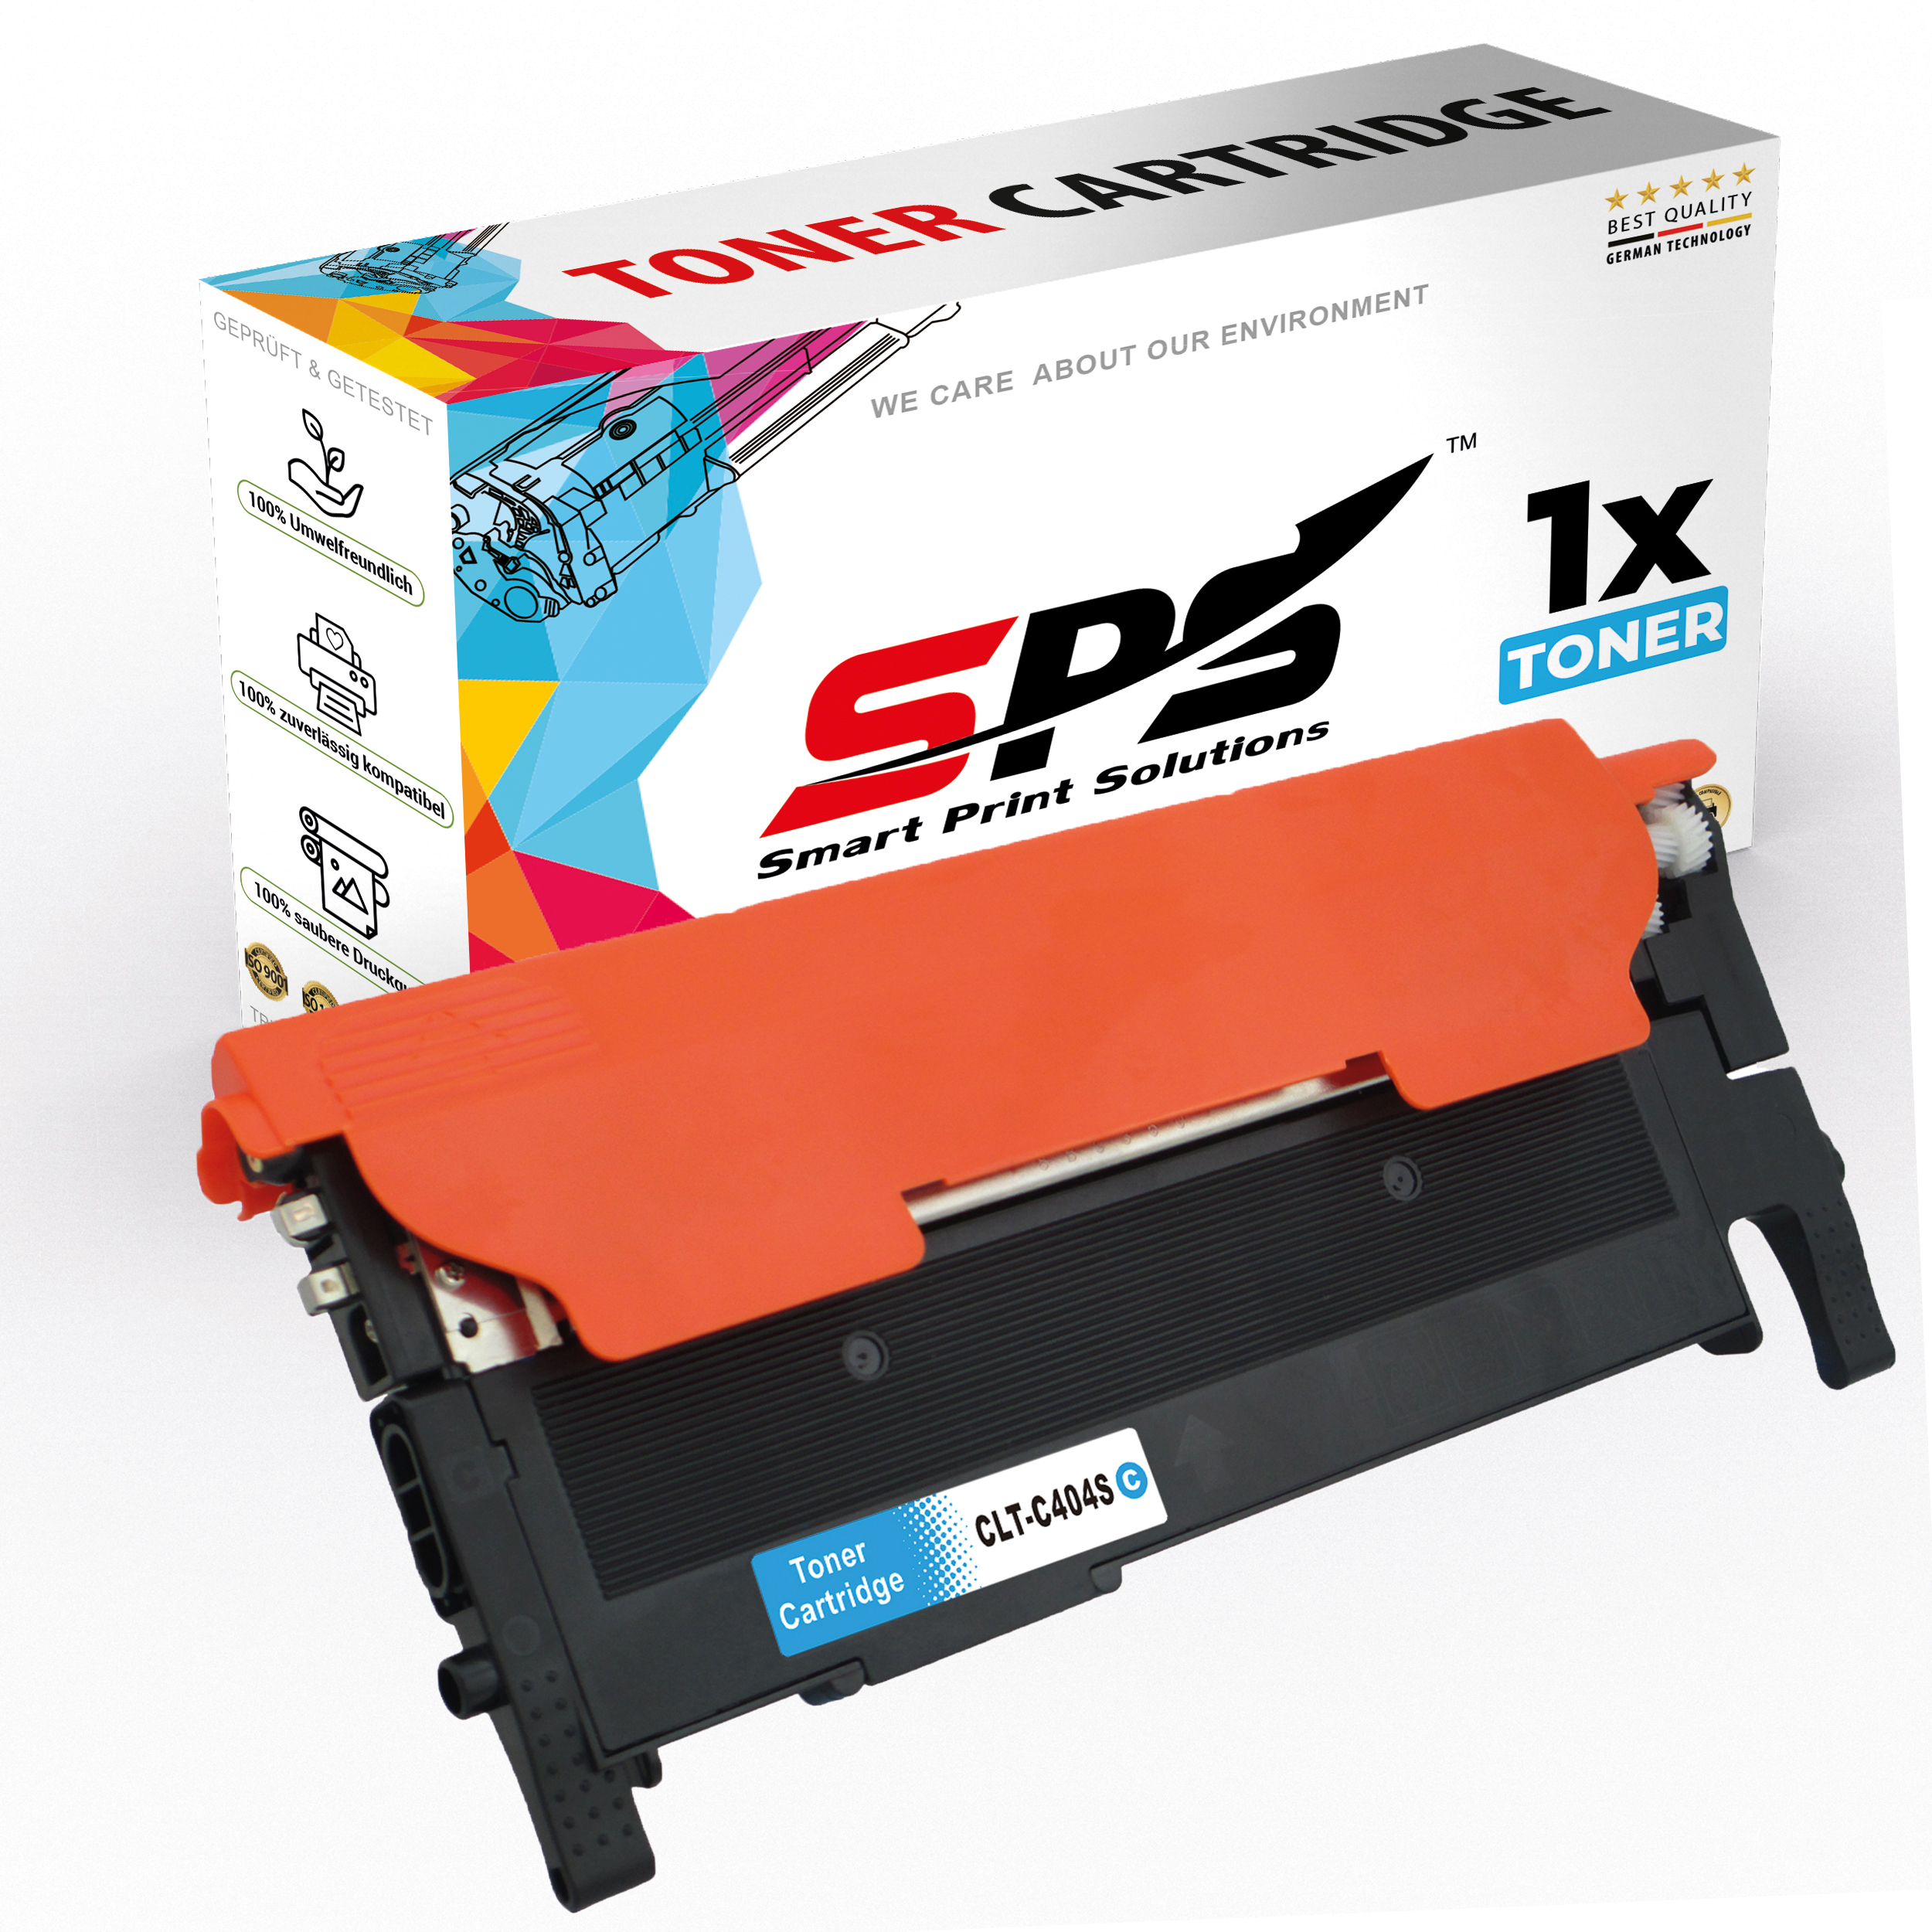 SPS S-16387 Toner (C404C SL-C483) Xpress / Cyan CLT-C404S